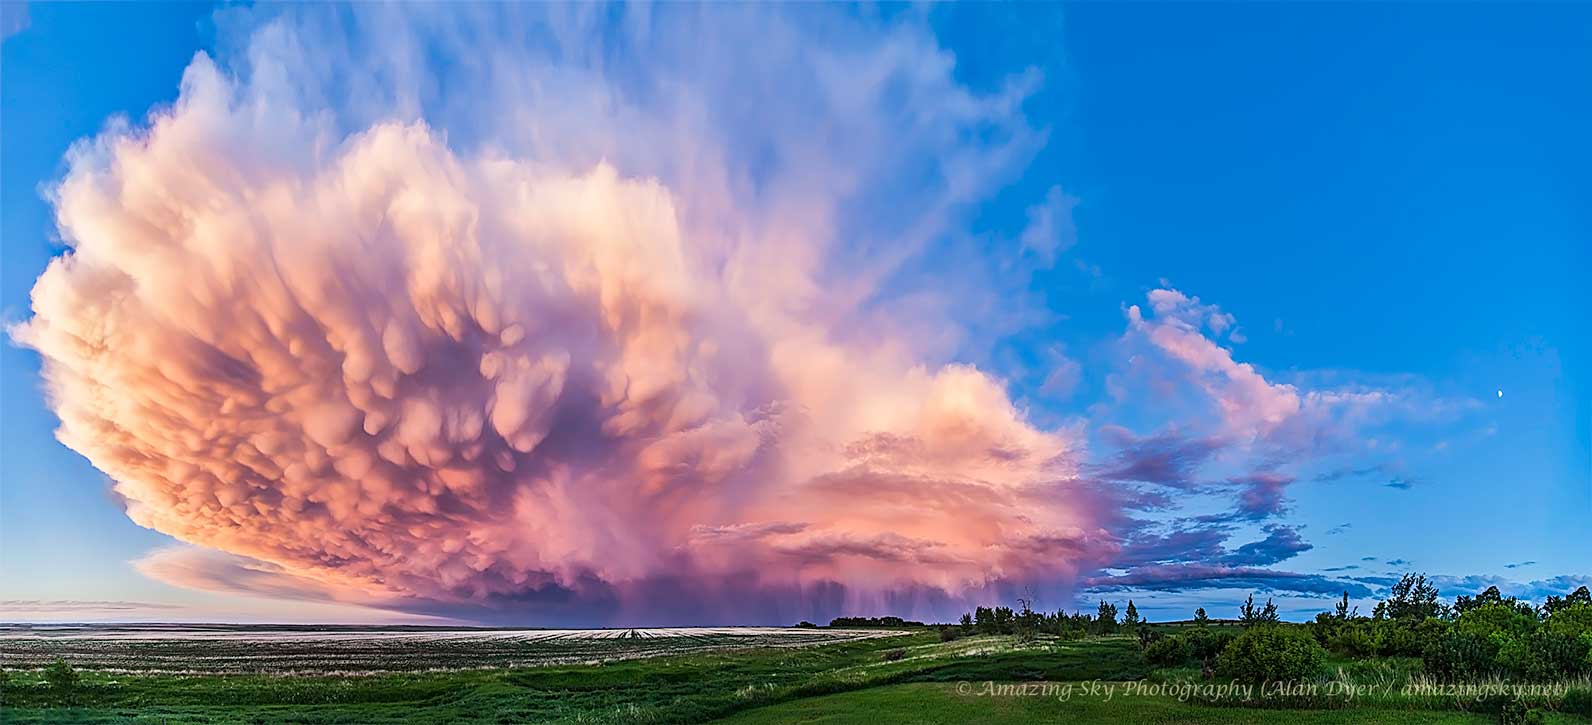 这张特色图片显示了2013年日落时分在加拿大艾伯塔省上空消退的积雨云。巨大的云朵显示乳状云在近端，大雨显示在远端。有关更多详细信息，请参阅说明。